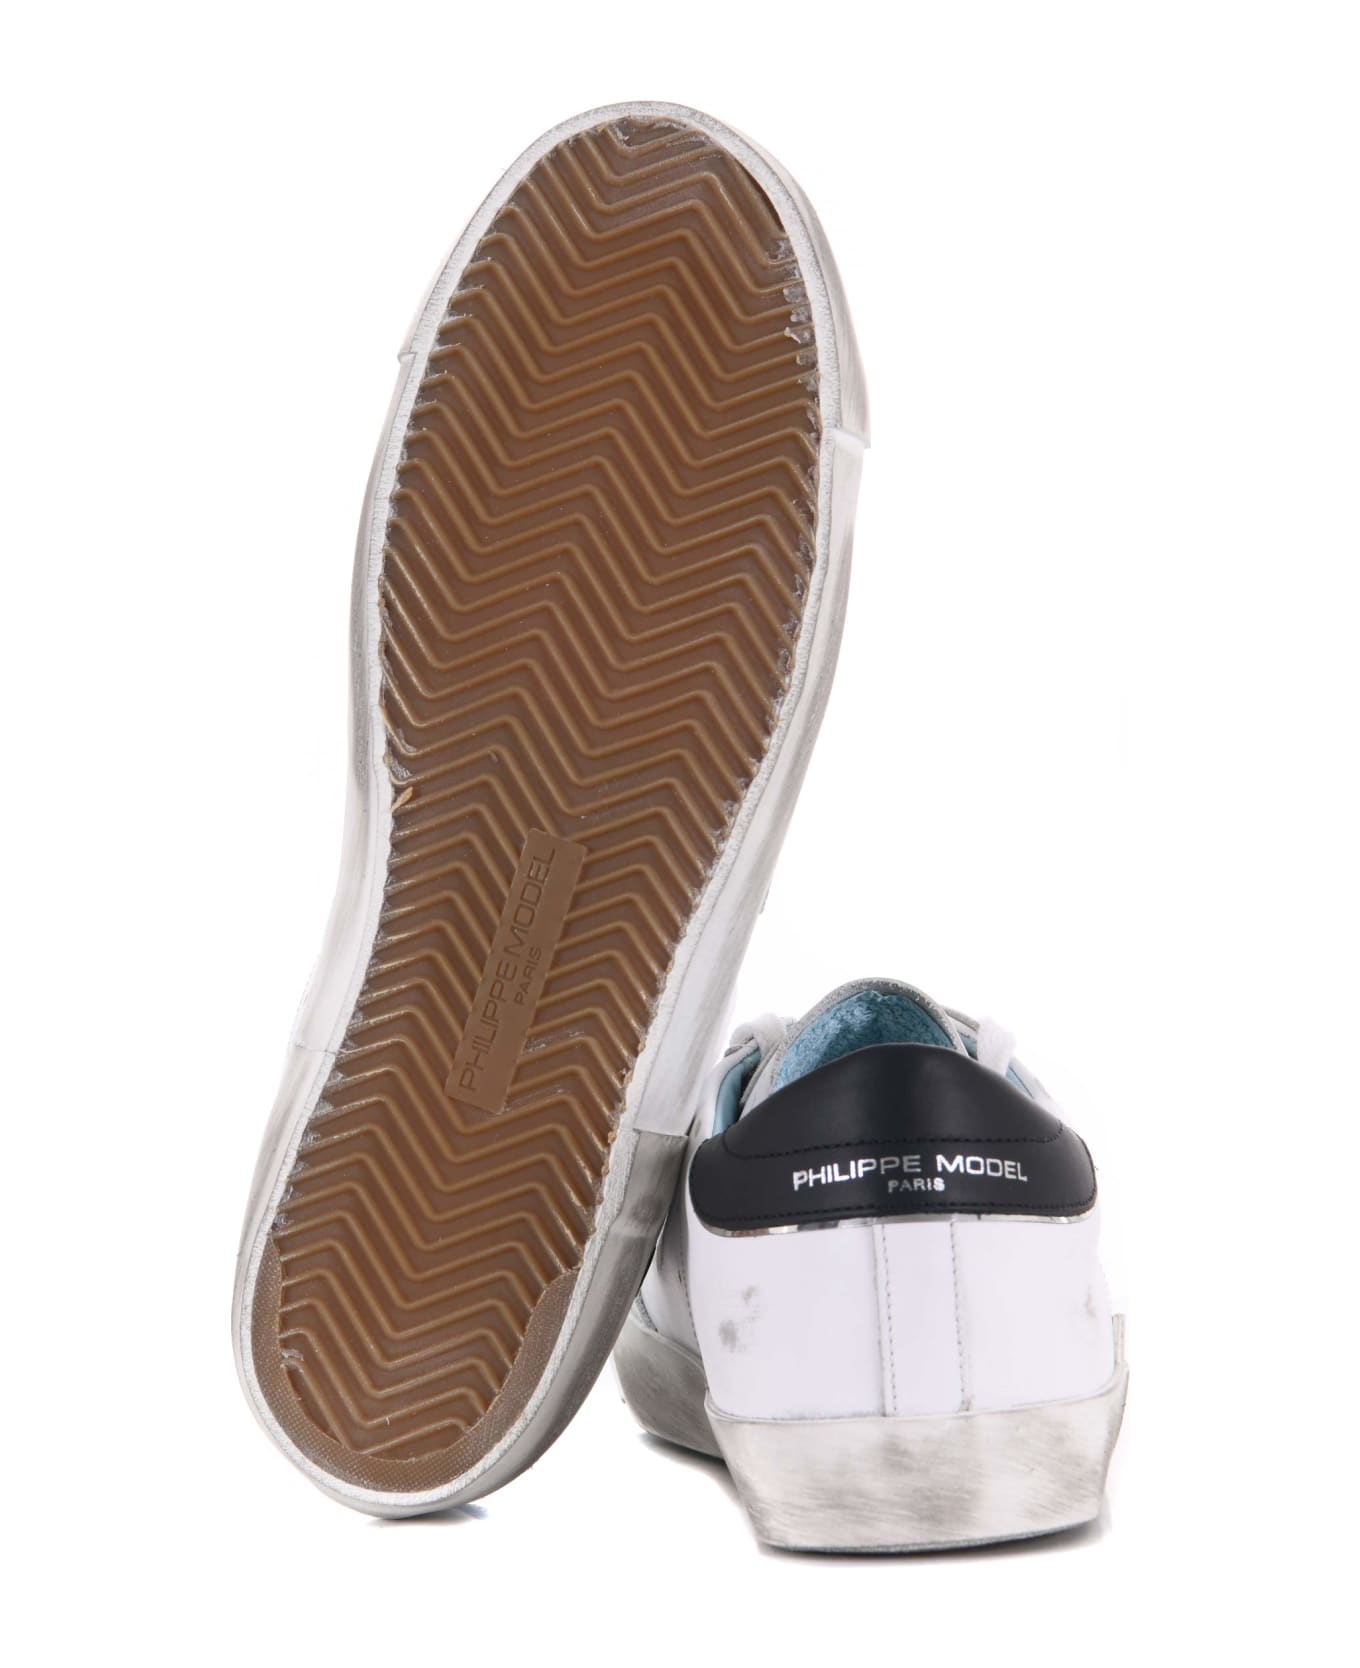 Philippe Model Sneakers Philippe Model "prsx Low" In Pelle Disponibile Store Scafati - Bianco/nero スニーカー